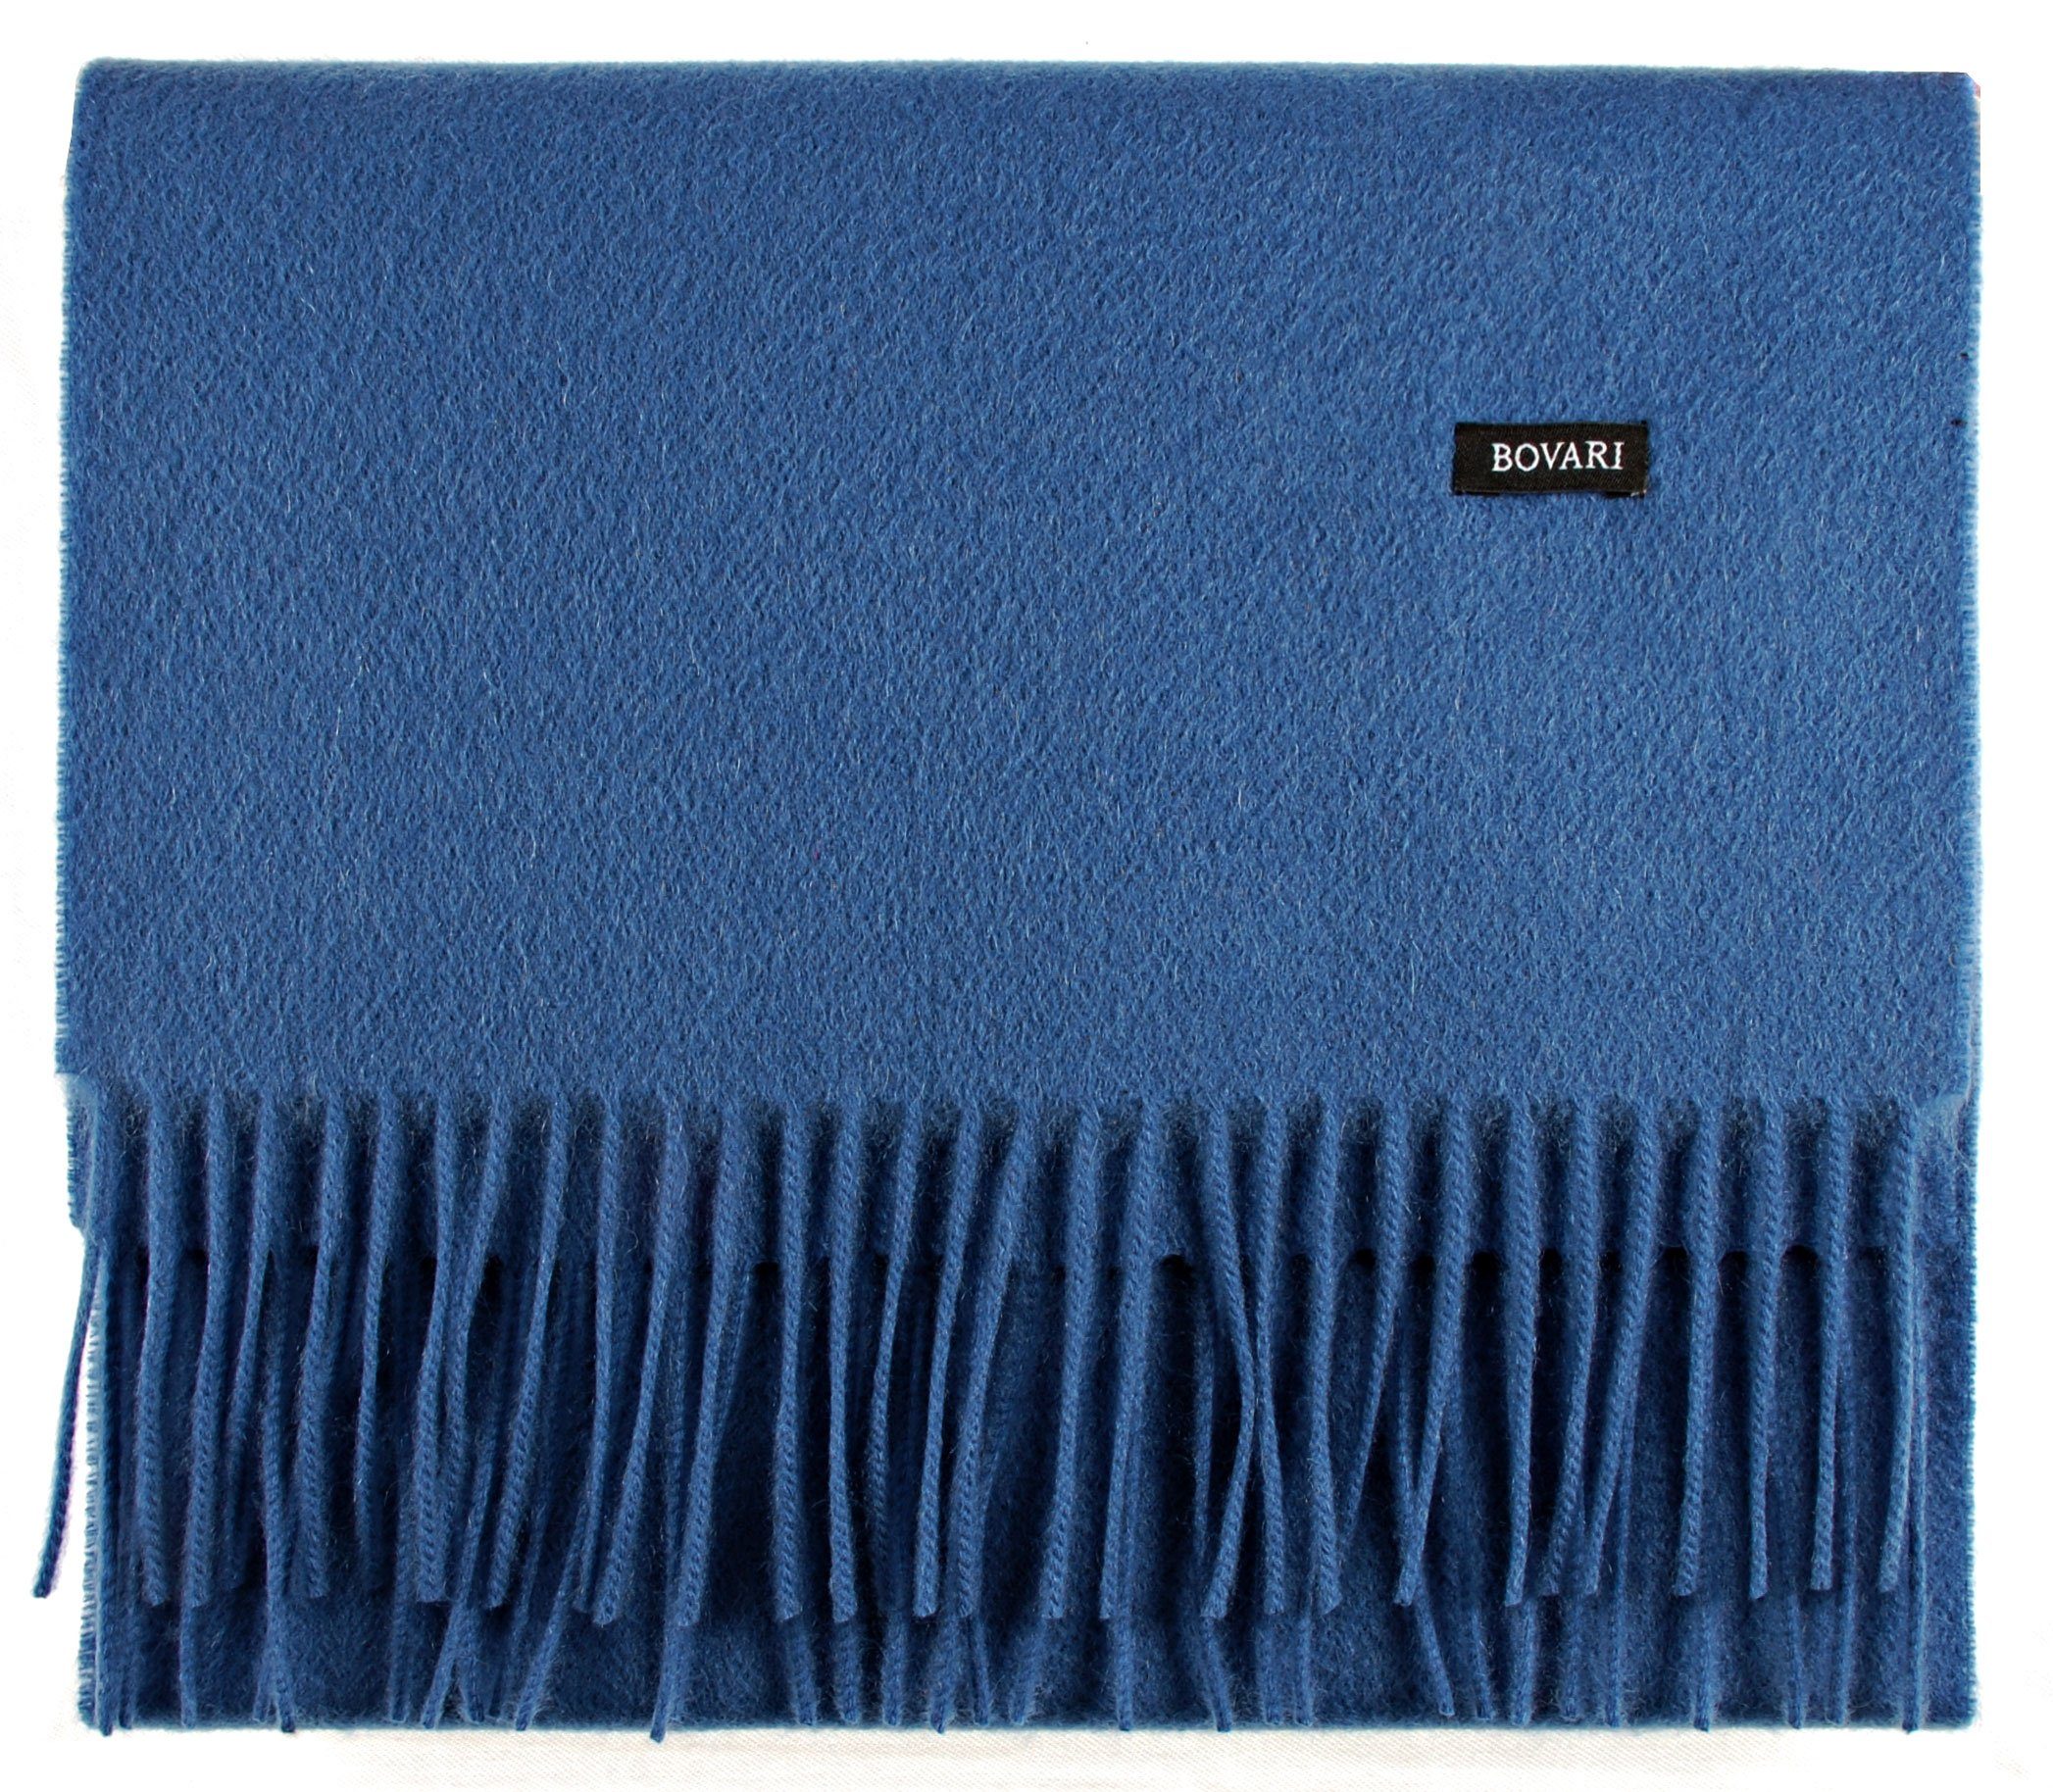 Bovari Kaschmirschal Kaschmir Schal Damen cm – Premium – 100% Kaschmir/Cashmere x / 31 classic Qualität, 180 blue blau